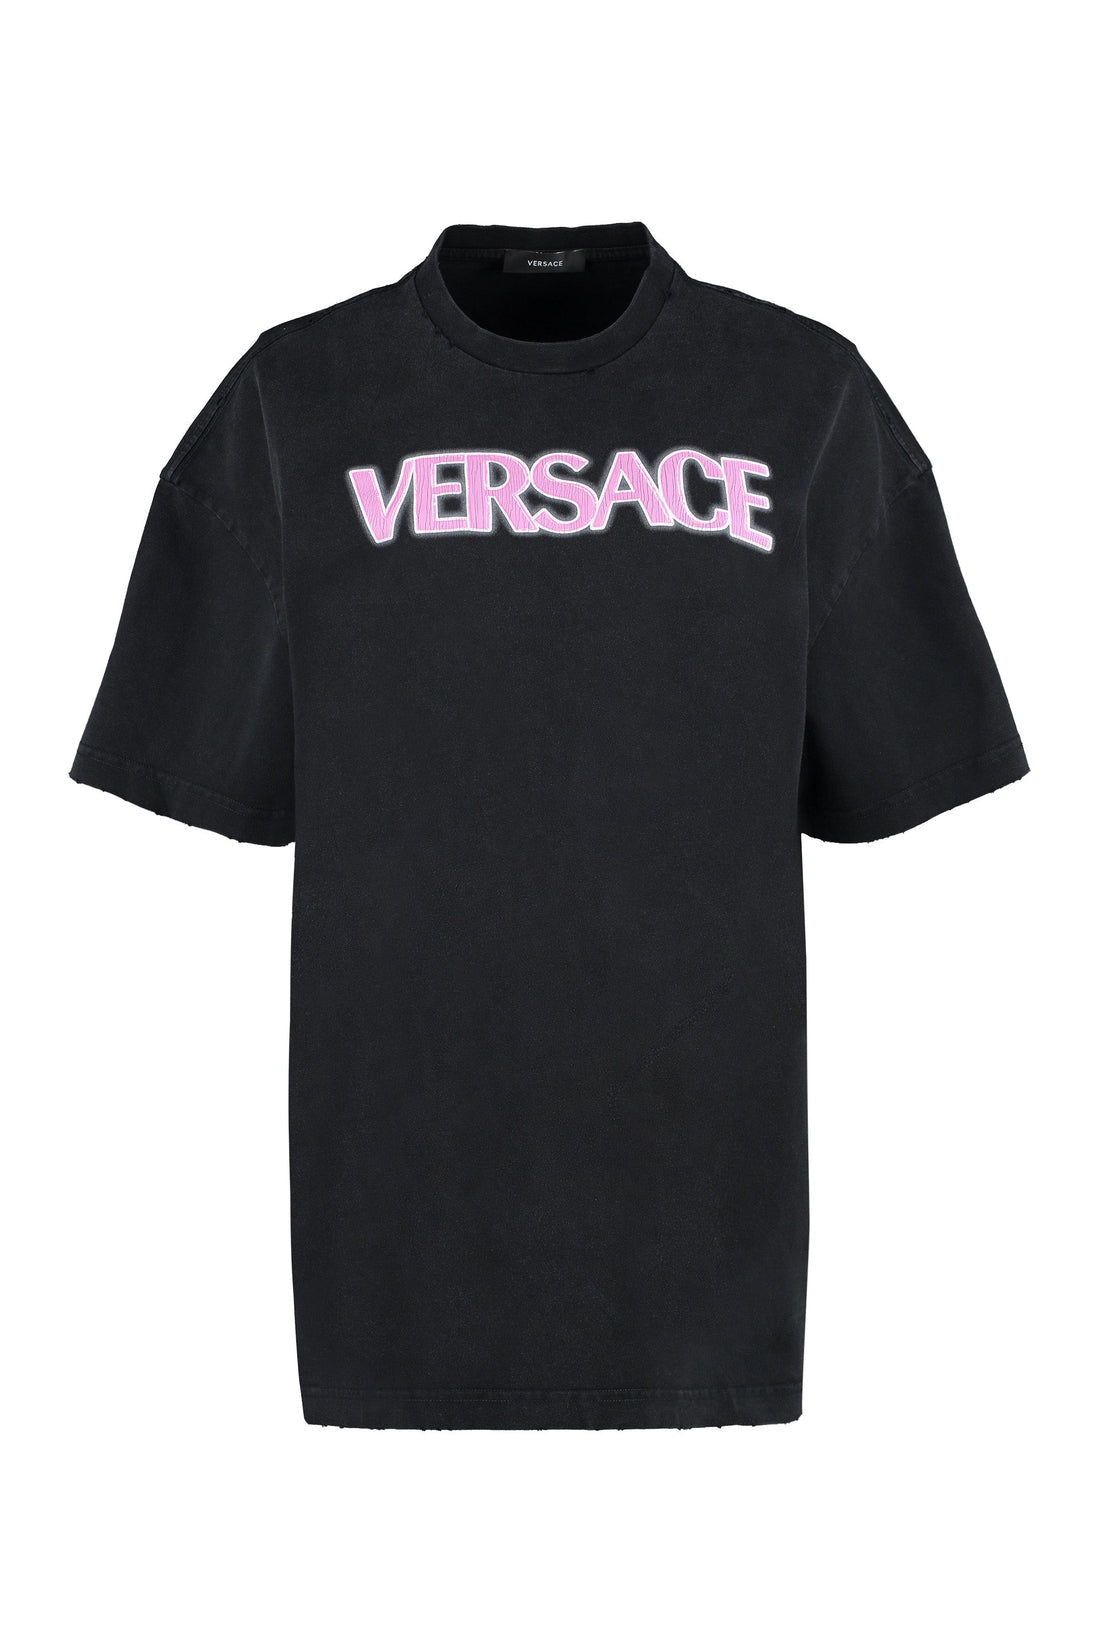 Versace-OUTLET-SALE-Logo cotton t-shirt-ARCHIVIST